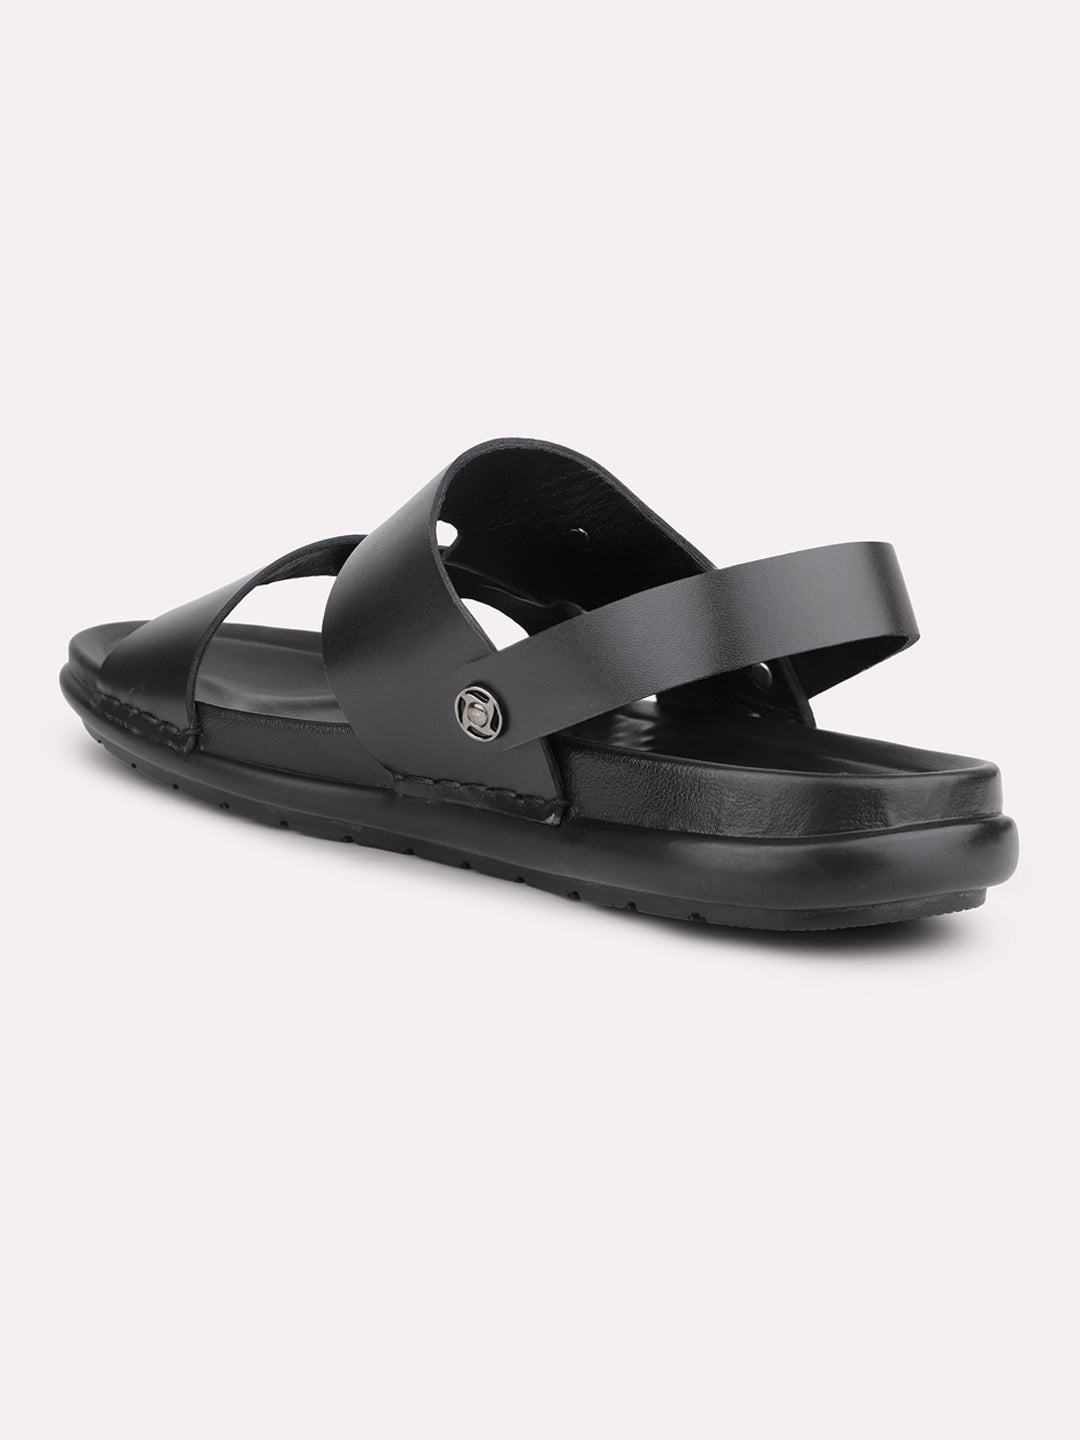 Atesber Black Woven Strap Sandal For Mens